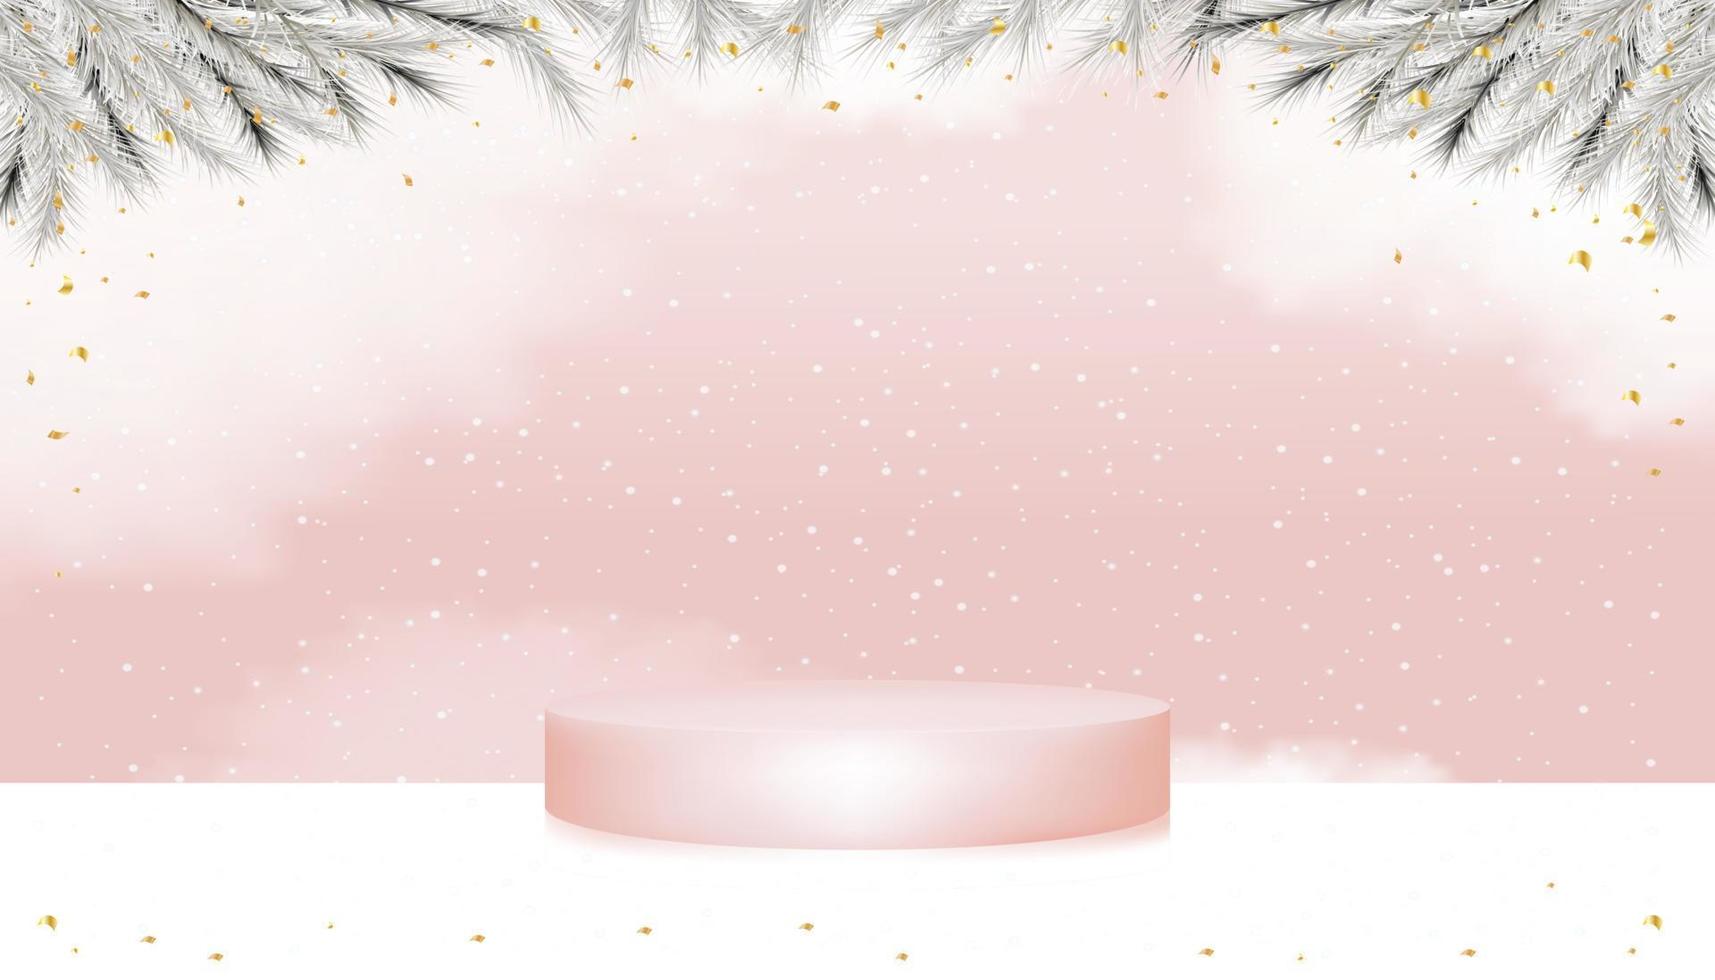 Podio de pedestal de pantalla 3d con ramas de árboles de navidad y elementos dorados con nieve sobre fondo rosa, concepto de diseño vectorial para tarjeta de navidad. telón de fondo para año nuevo, venta de vacaciones de invierno, promoción vector